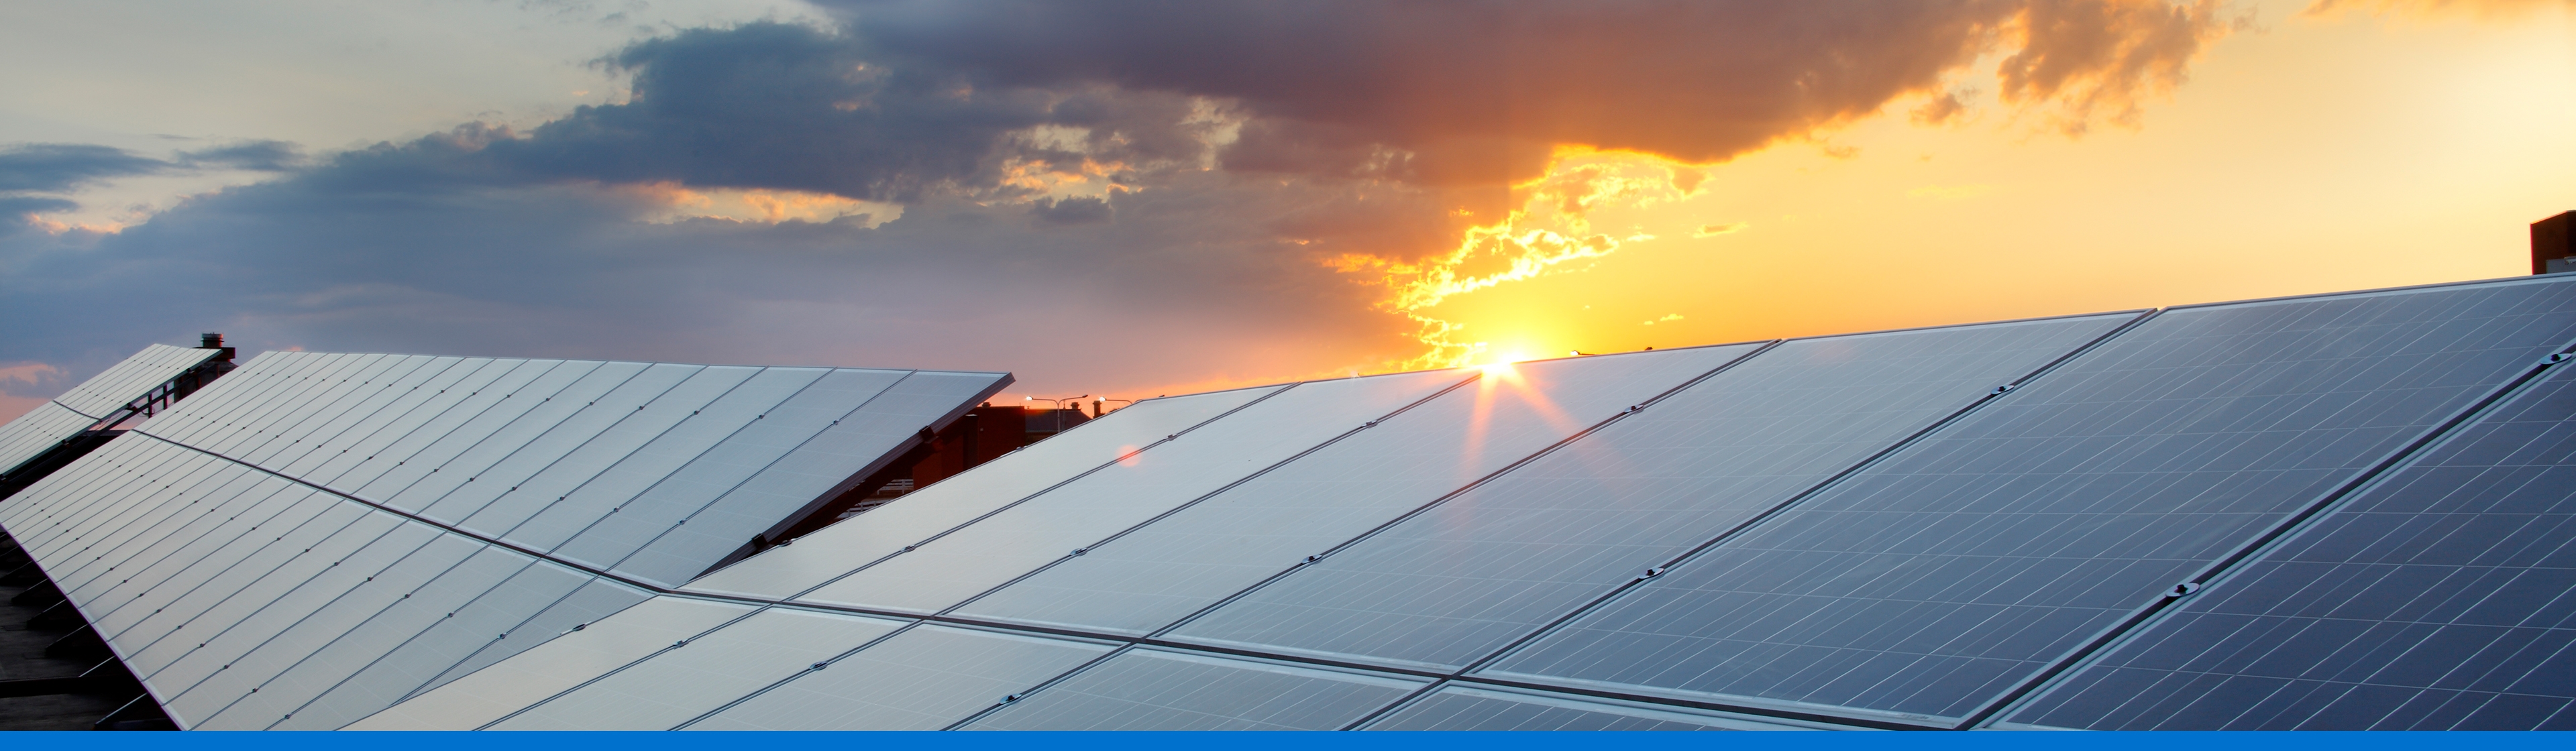 Crea tu proyecto de energía solar, conoce las características y beneficios.